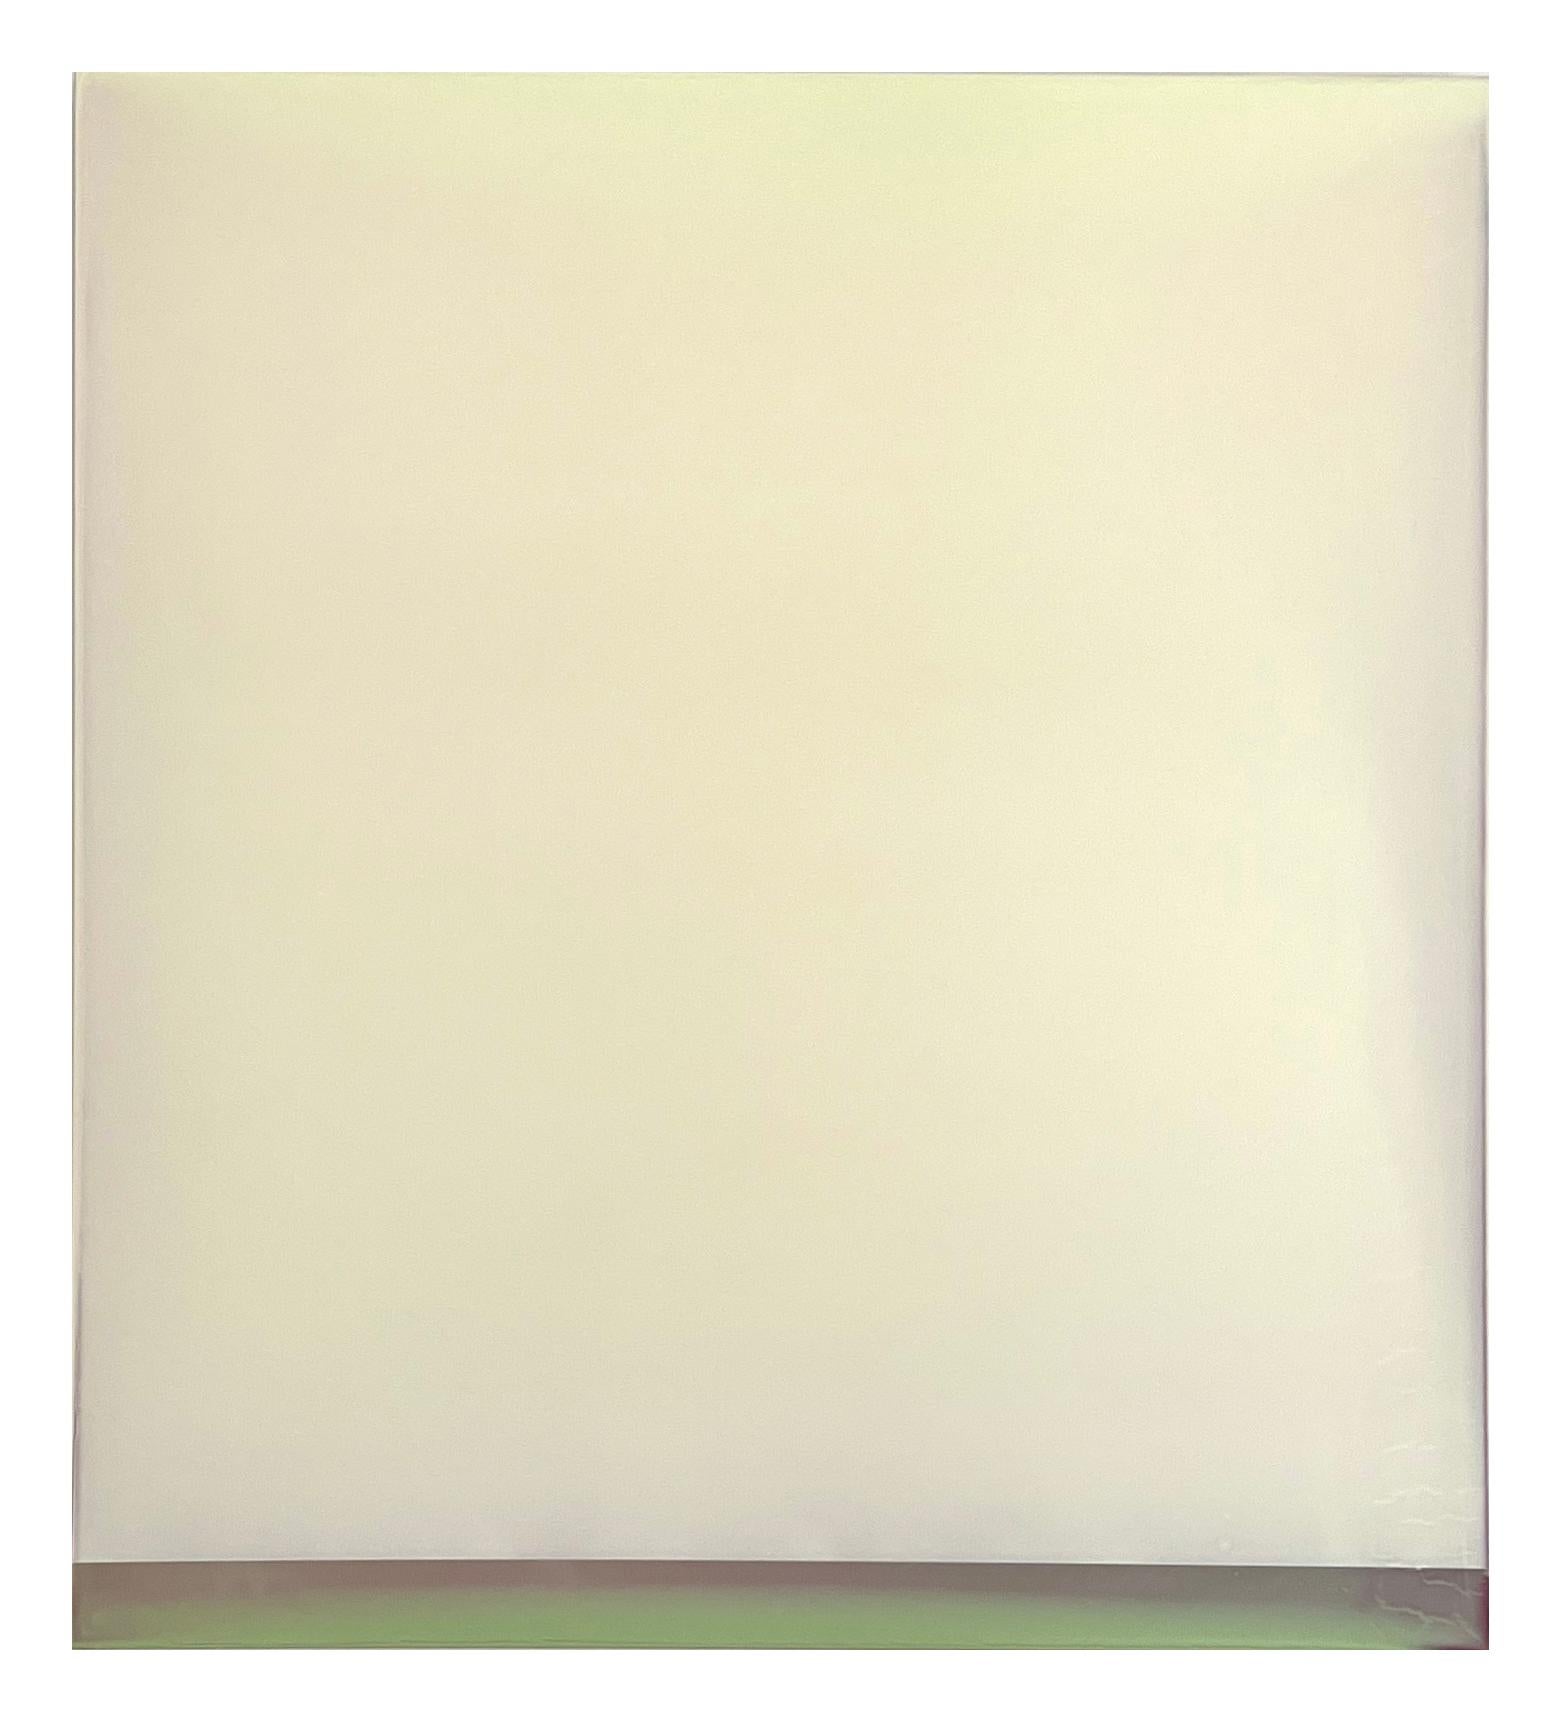 Susan English Abstract Painting – Scherbenwelt Nr. 34, Buttermilch Elfenbeingelb, Mulberry, Oliv getönte Polymermalerei